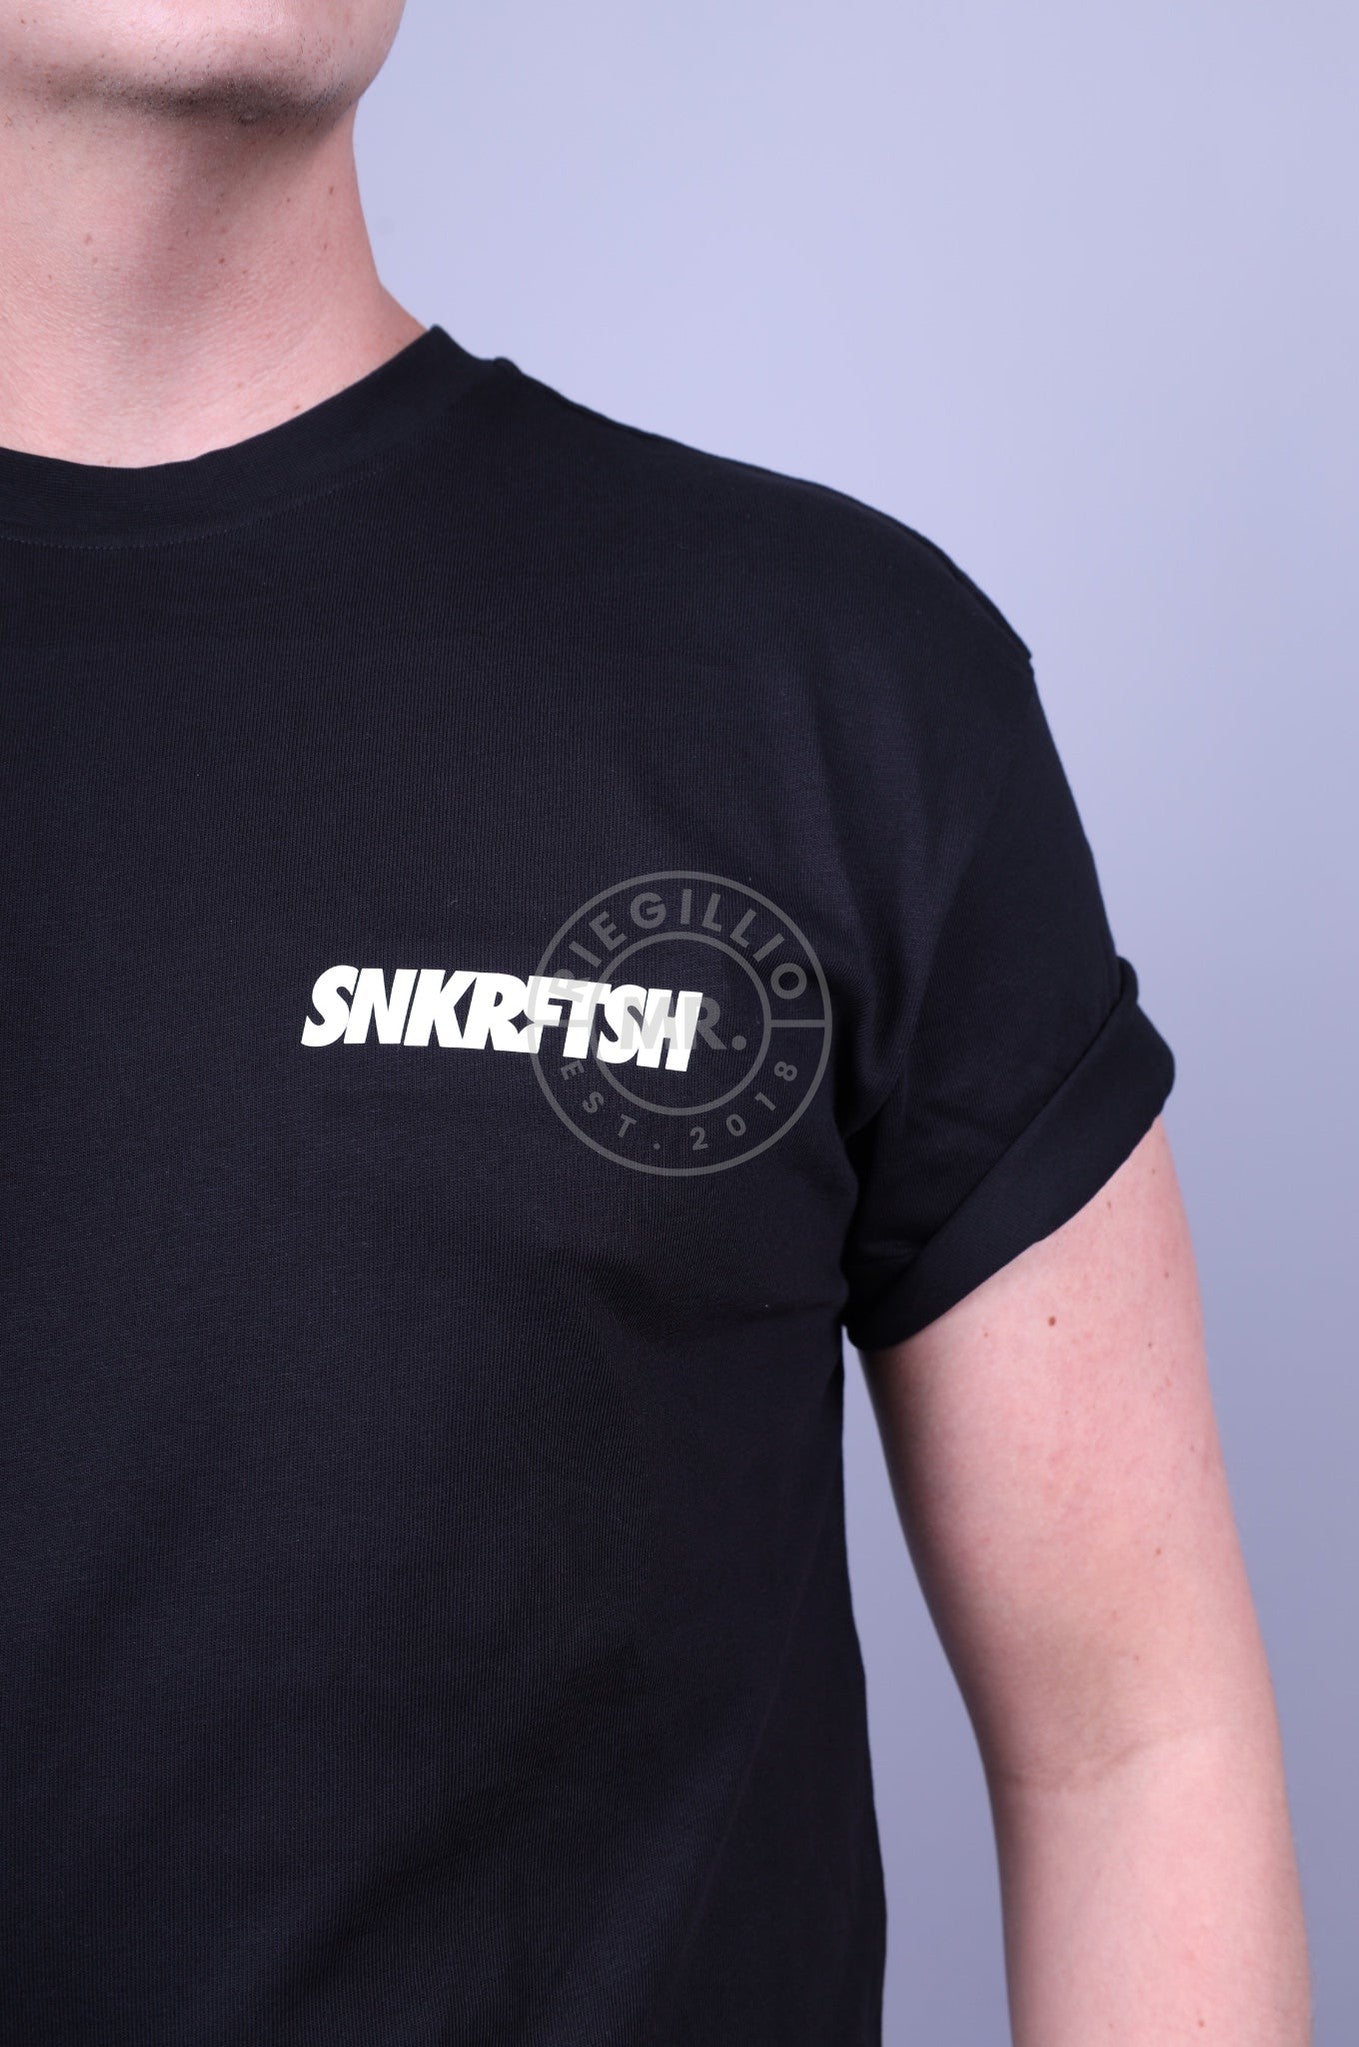 SNKRFTSH Logo T-shirt at MR. Riegillio